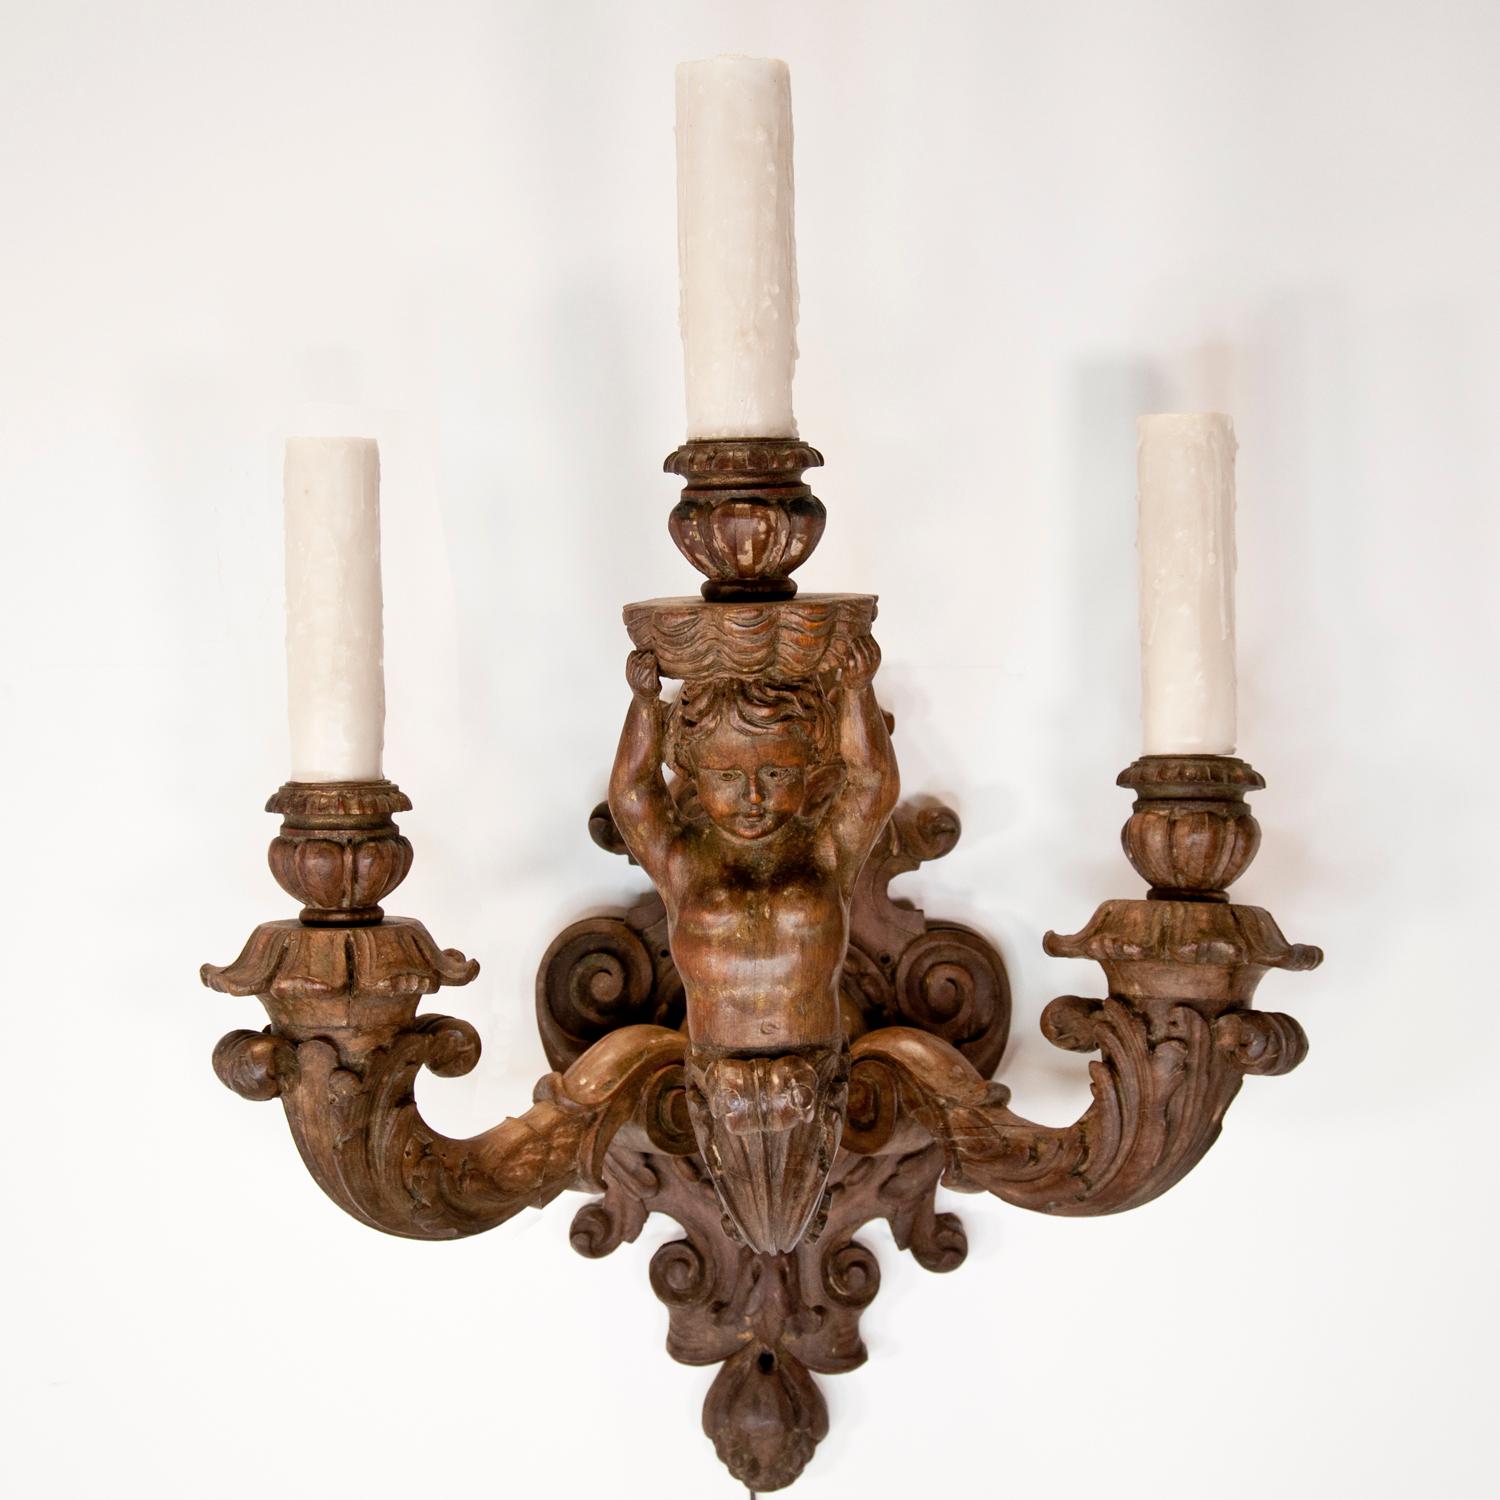 Paire d'appliques vintage en bois sculpté de style baroque, datant de la fin du 19e ou du début du 20e siècle, présentant trois bras avec des chérubins tenant un chandelier. Electrifié. Les tubes de bougies en cire au-dessus des prises de courant